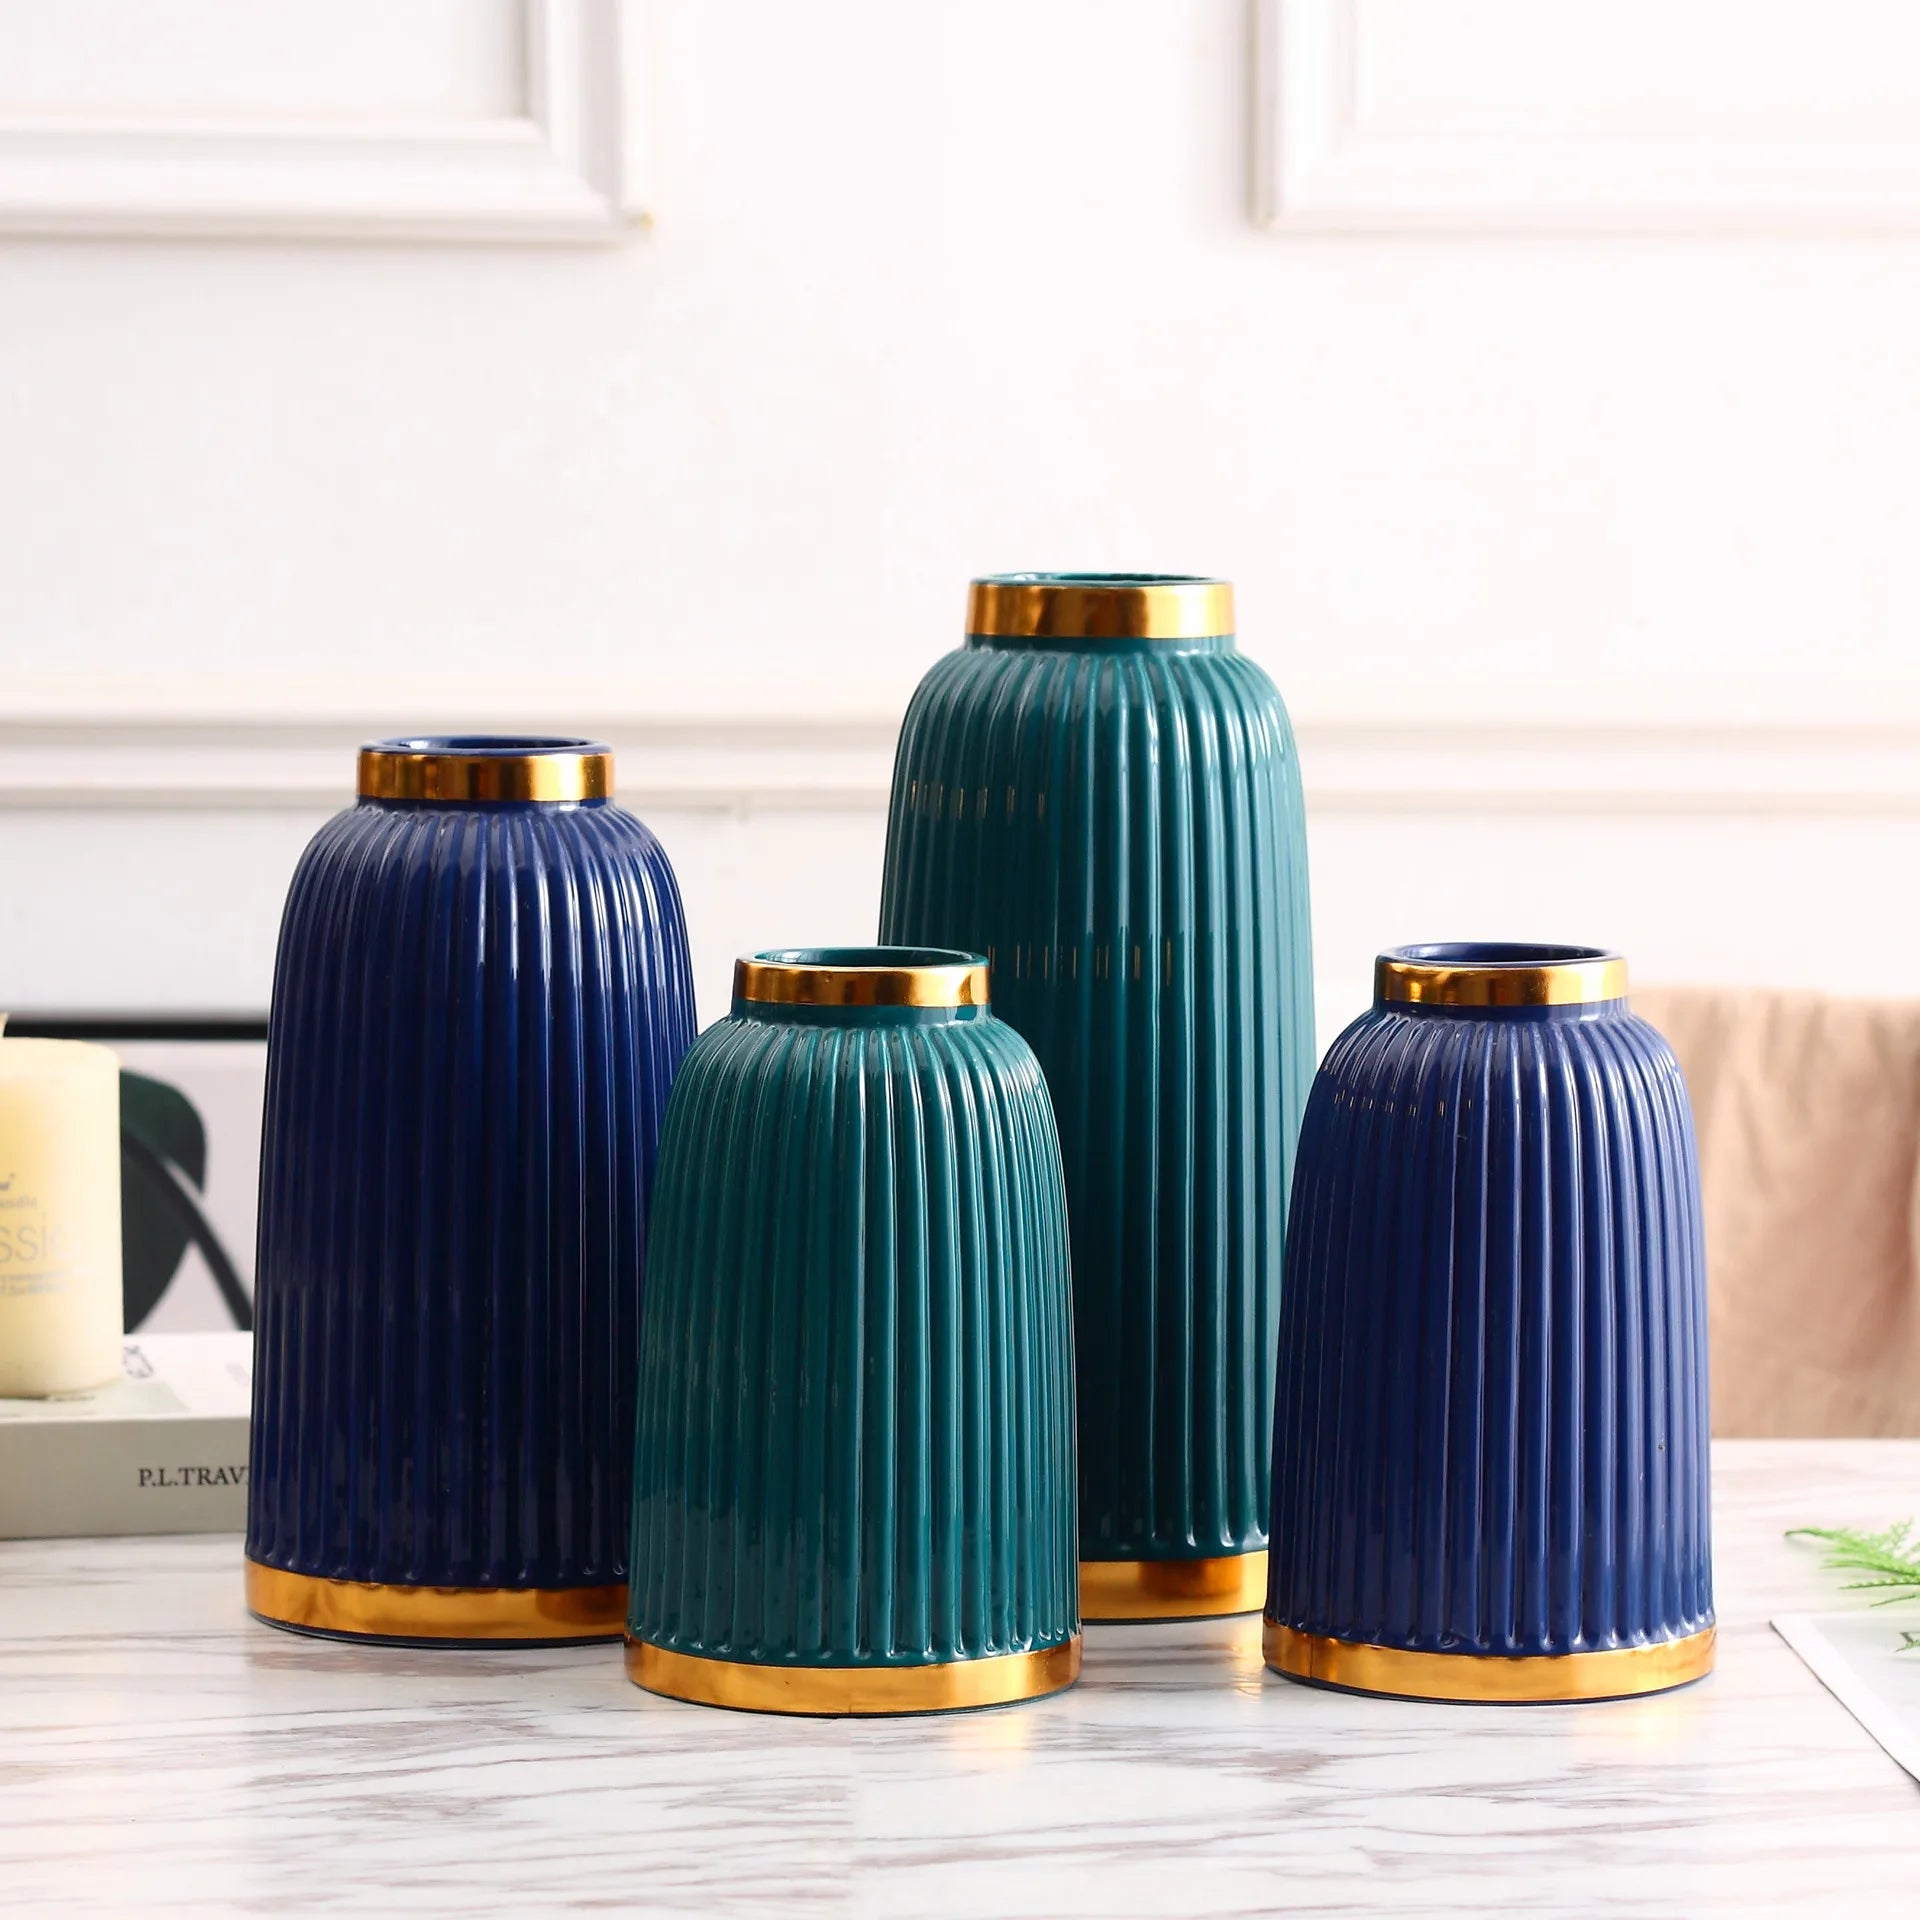 Moderna minimalistiska keramiska vaser som ligger i vitt, tibetanska blått och grönt tillbehör för heminredning för vardagsrum